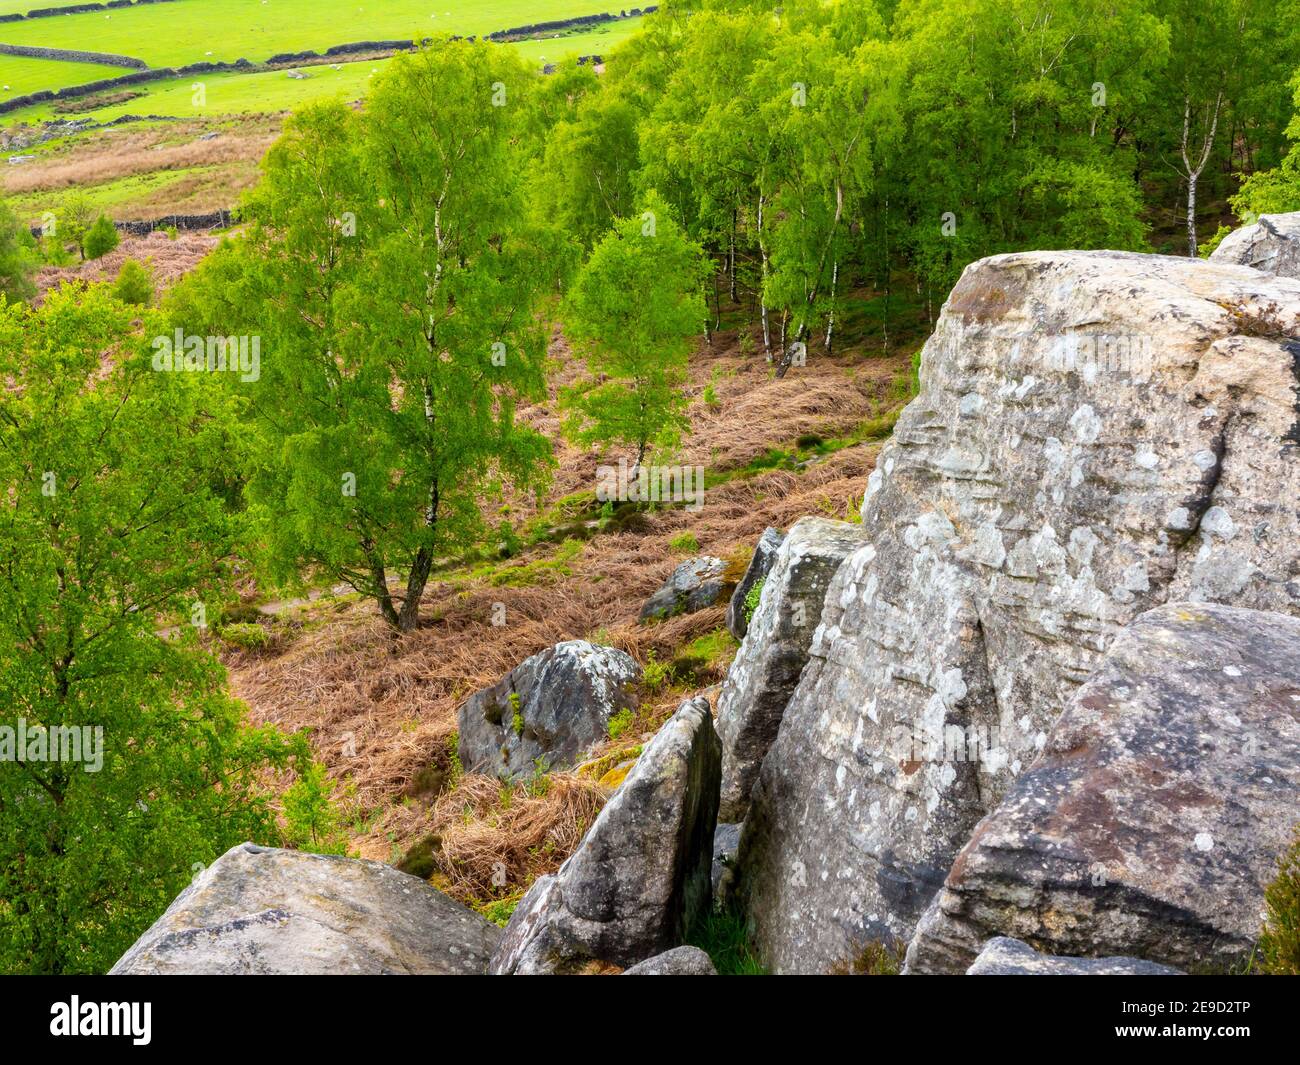 Paysage du début de l'été avec des rochers et des bouleaux argentés à Birchen Edge près de Baslow dans le parc national de Peak District Derbyshire Dales Angleterre Royaume-Uni Banque D'Images